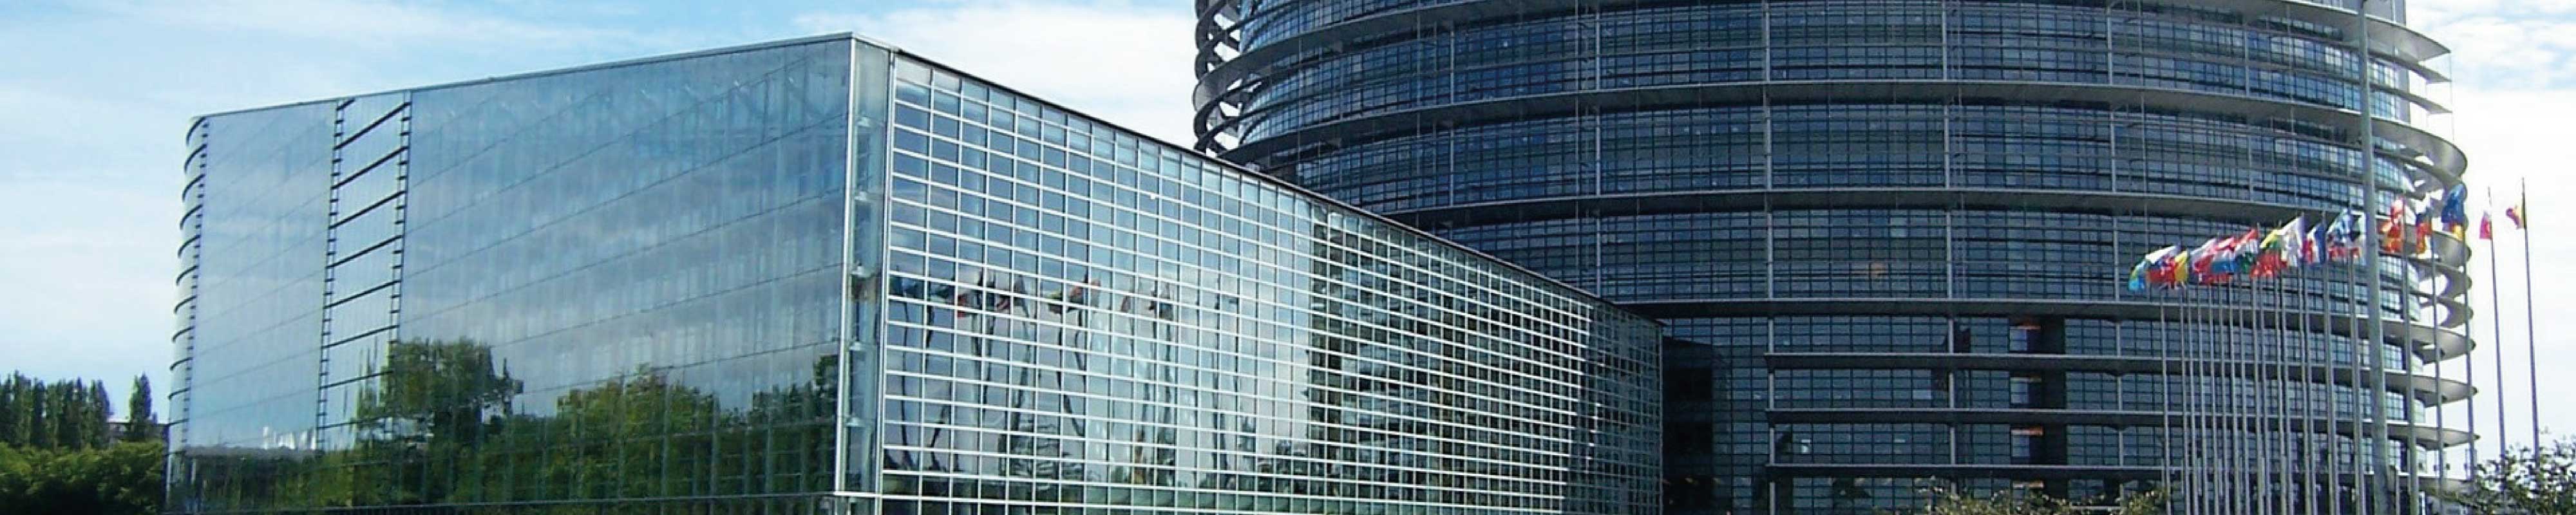 Luggage Storage | European Parliament in Strasbourg - Nannybag